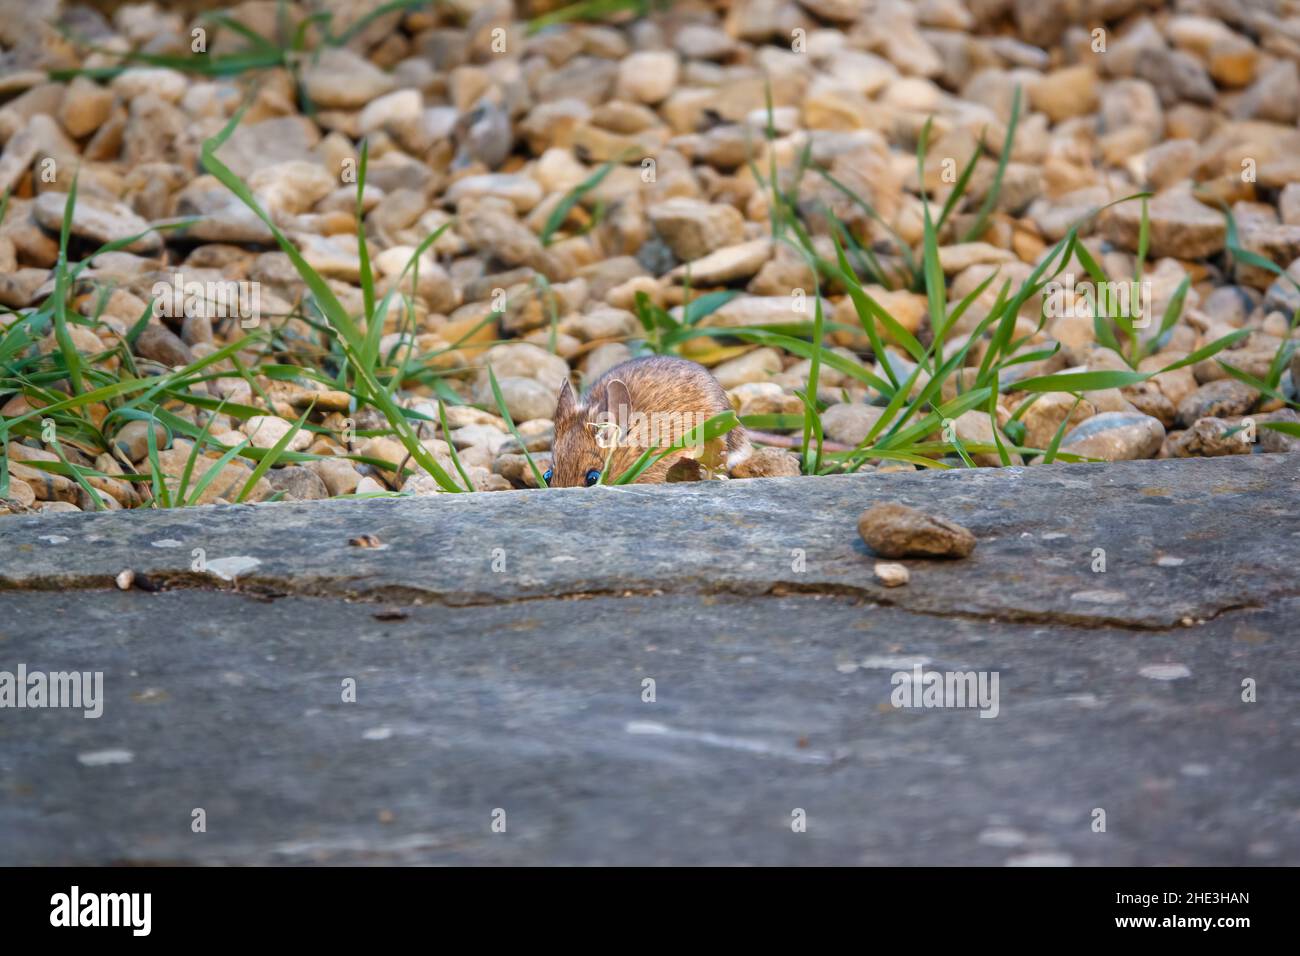 Un ratón de campo de madera (Apodemus sylvaticus) comiendo comida de aves fuera de la tierra Foto de stock